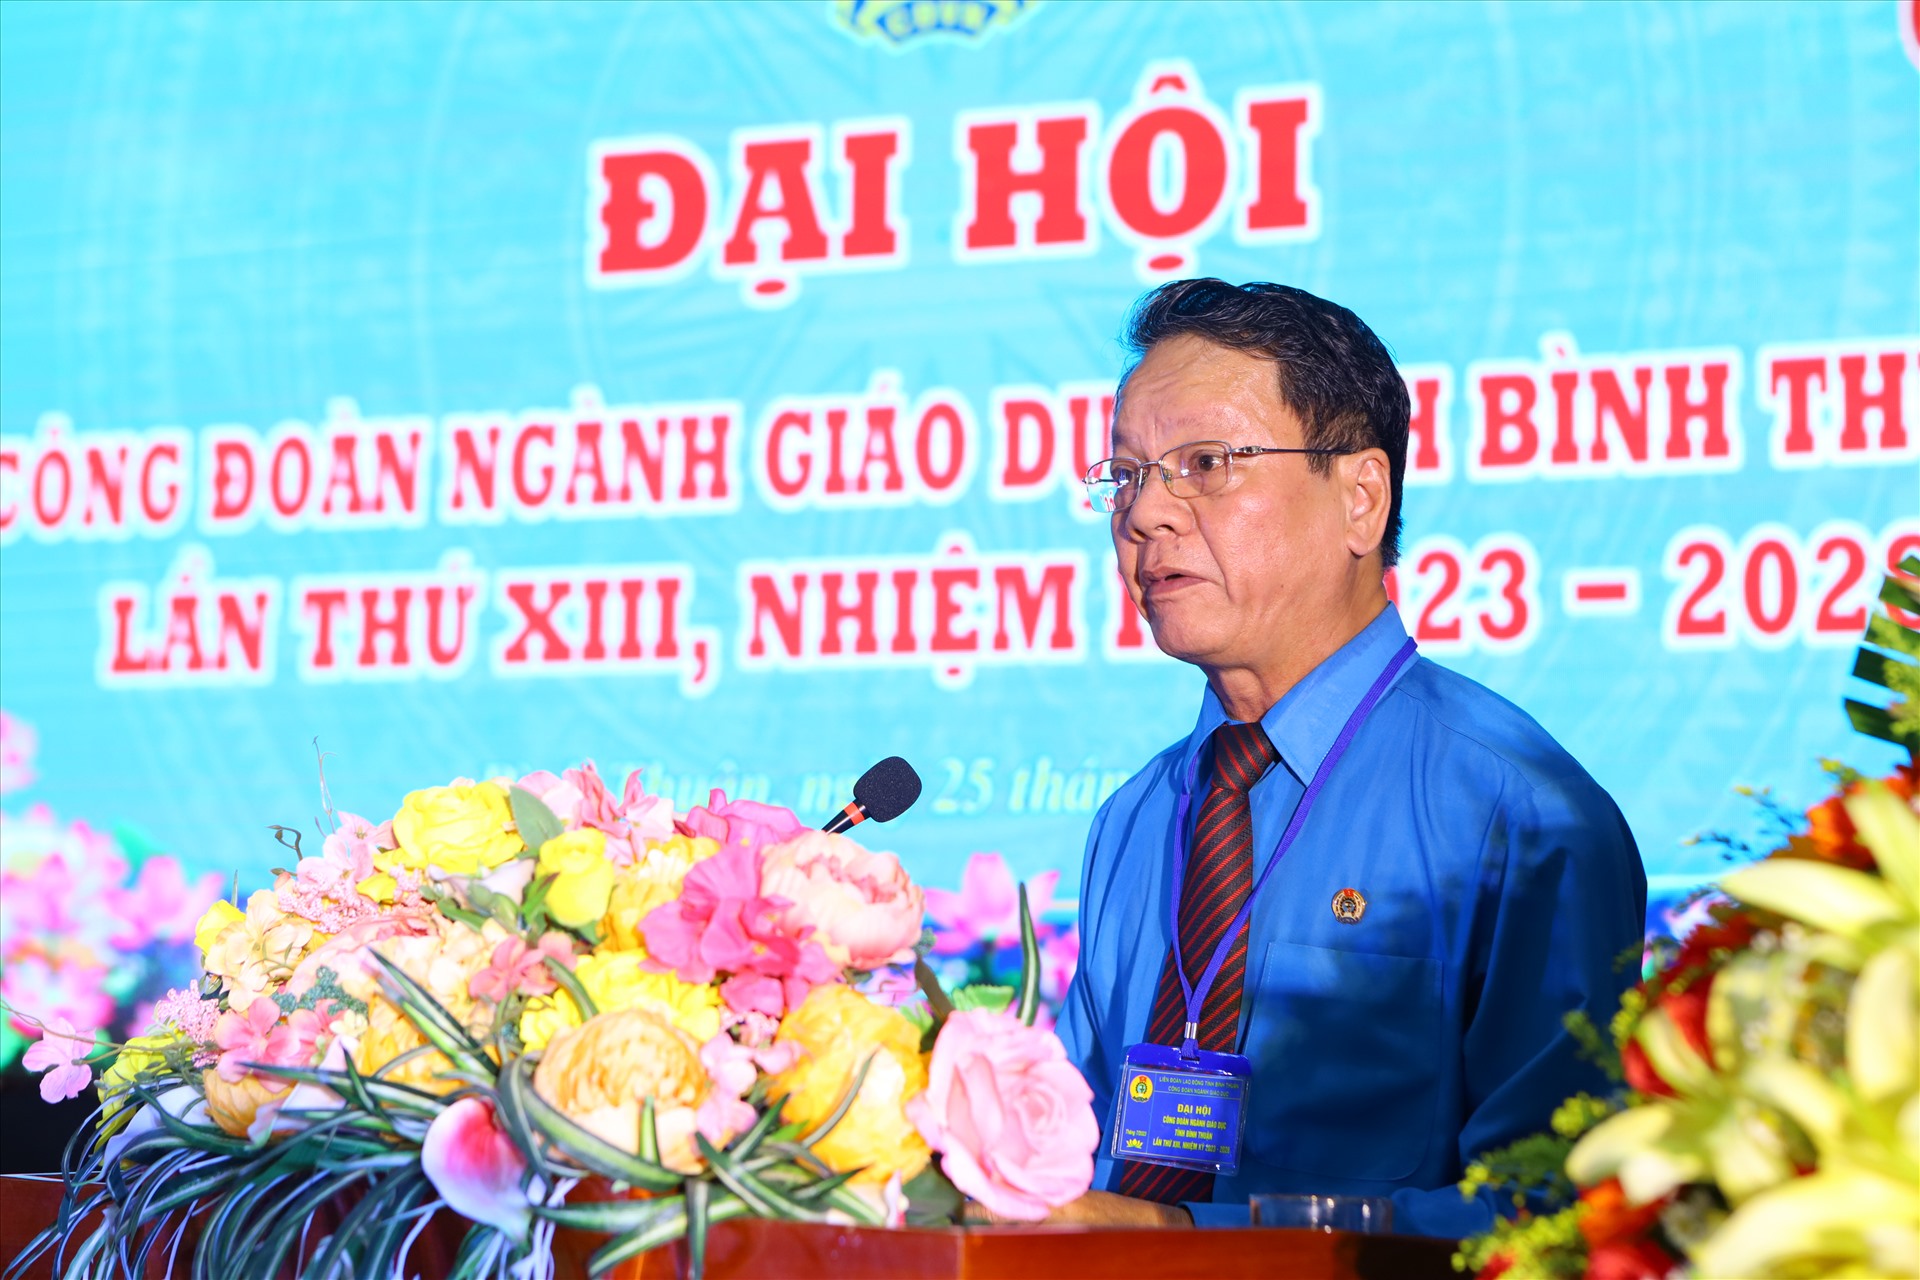 Đồng chí Nguyễn Xuân Phối, Chủ tịch LĐLĐ tỉnh Bình Thuận phát biểu chỉ đạo tại Đại hội. Ảnh: Duy Tuấn